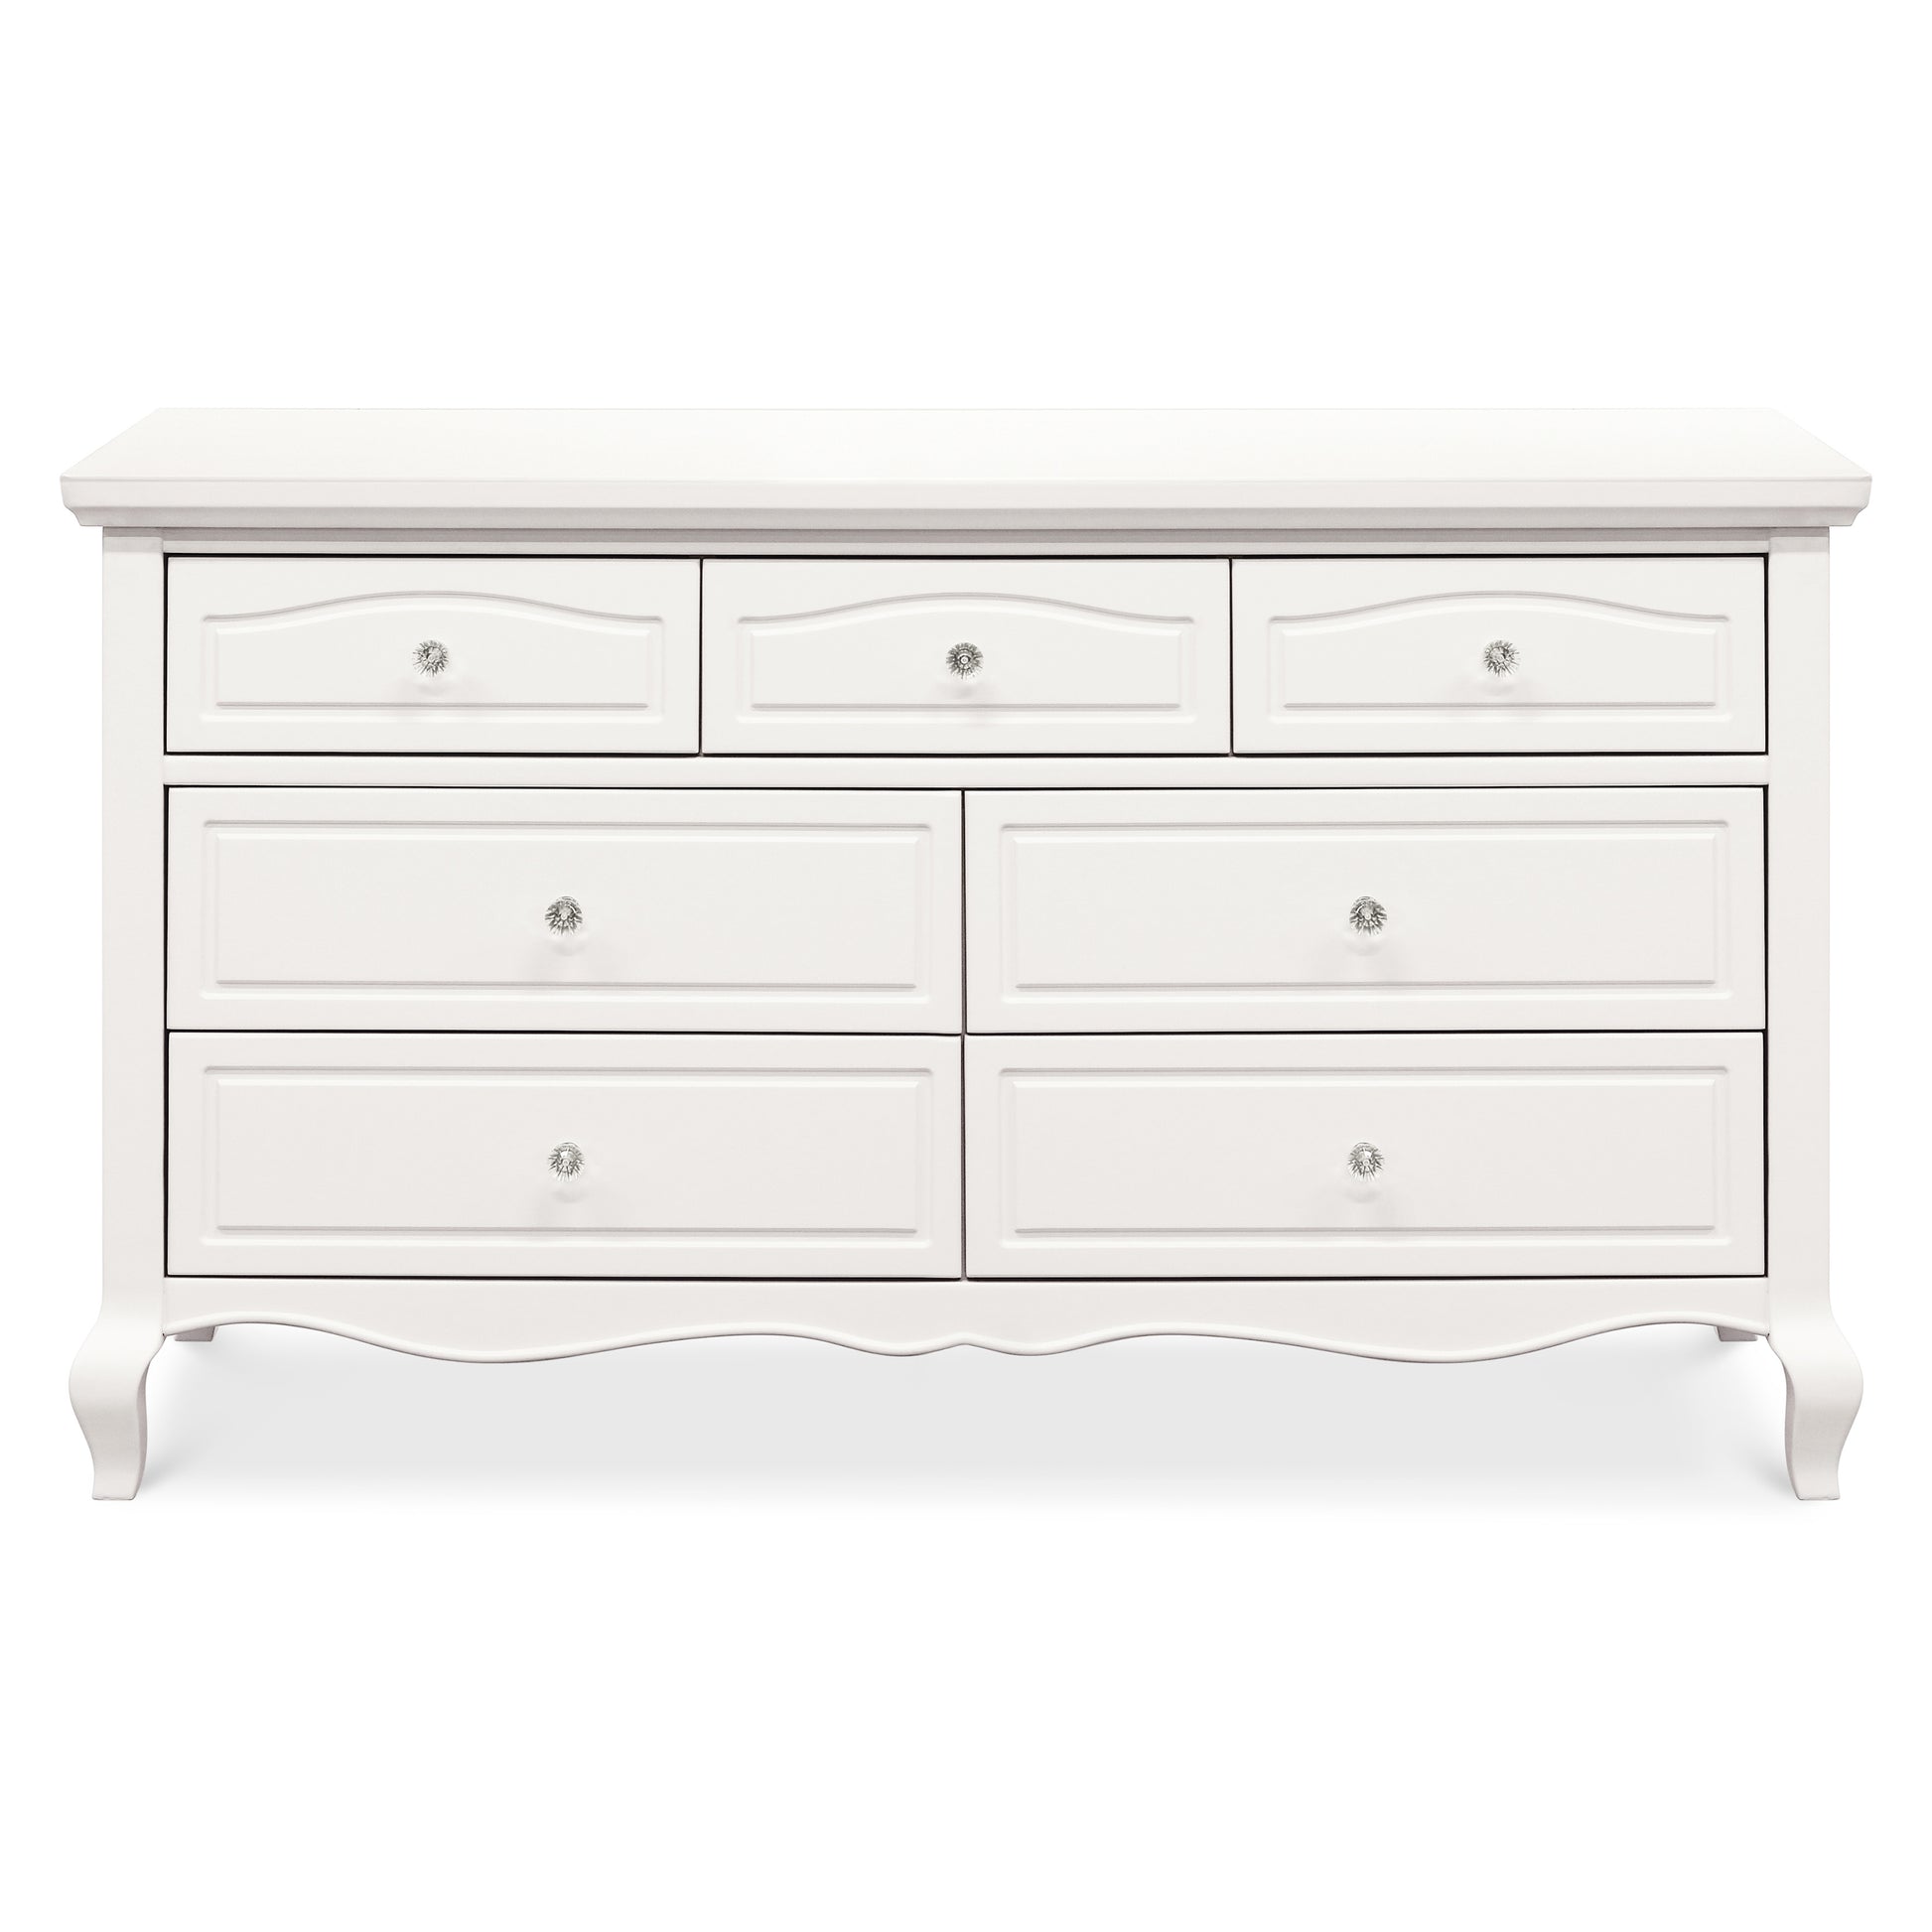 B19616RW,Mirabelle 7-Drawer Dresser in Warm White